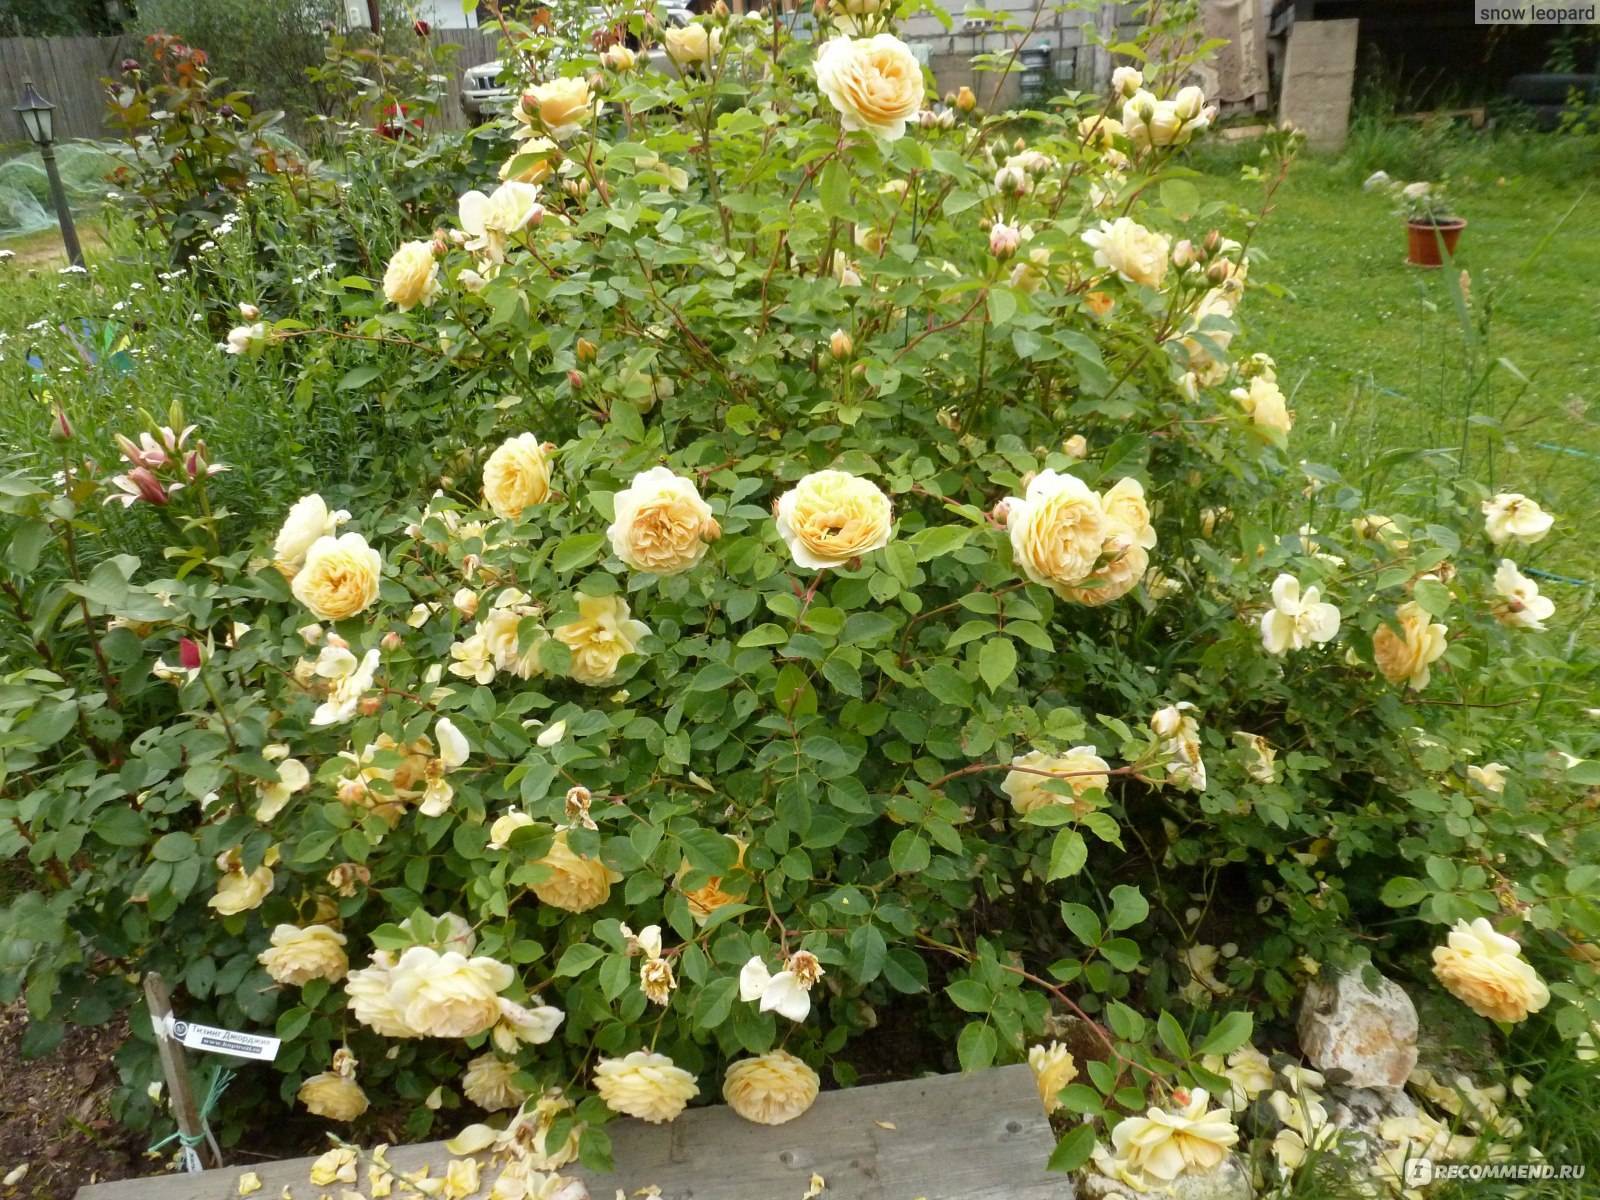 Выращивание парковой розы тизинг джорджия: уход за плетистым сортом кустарника